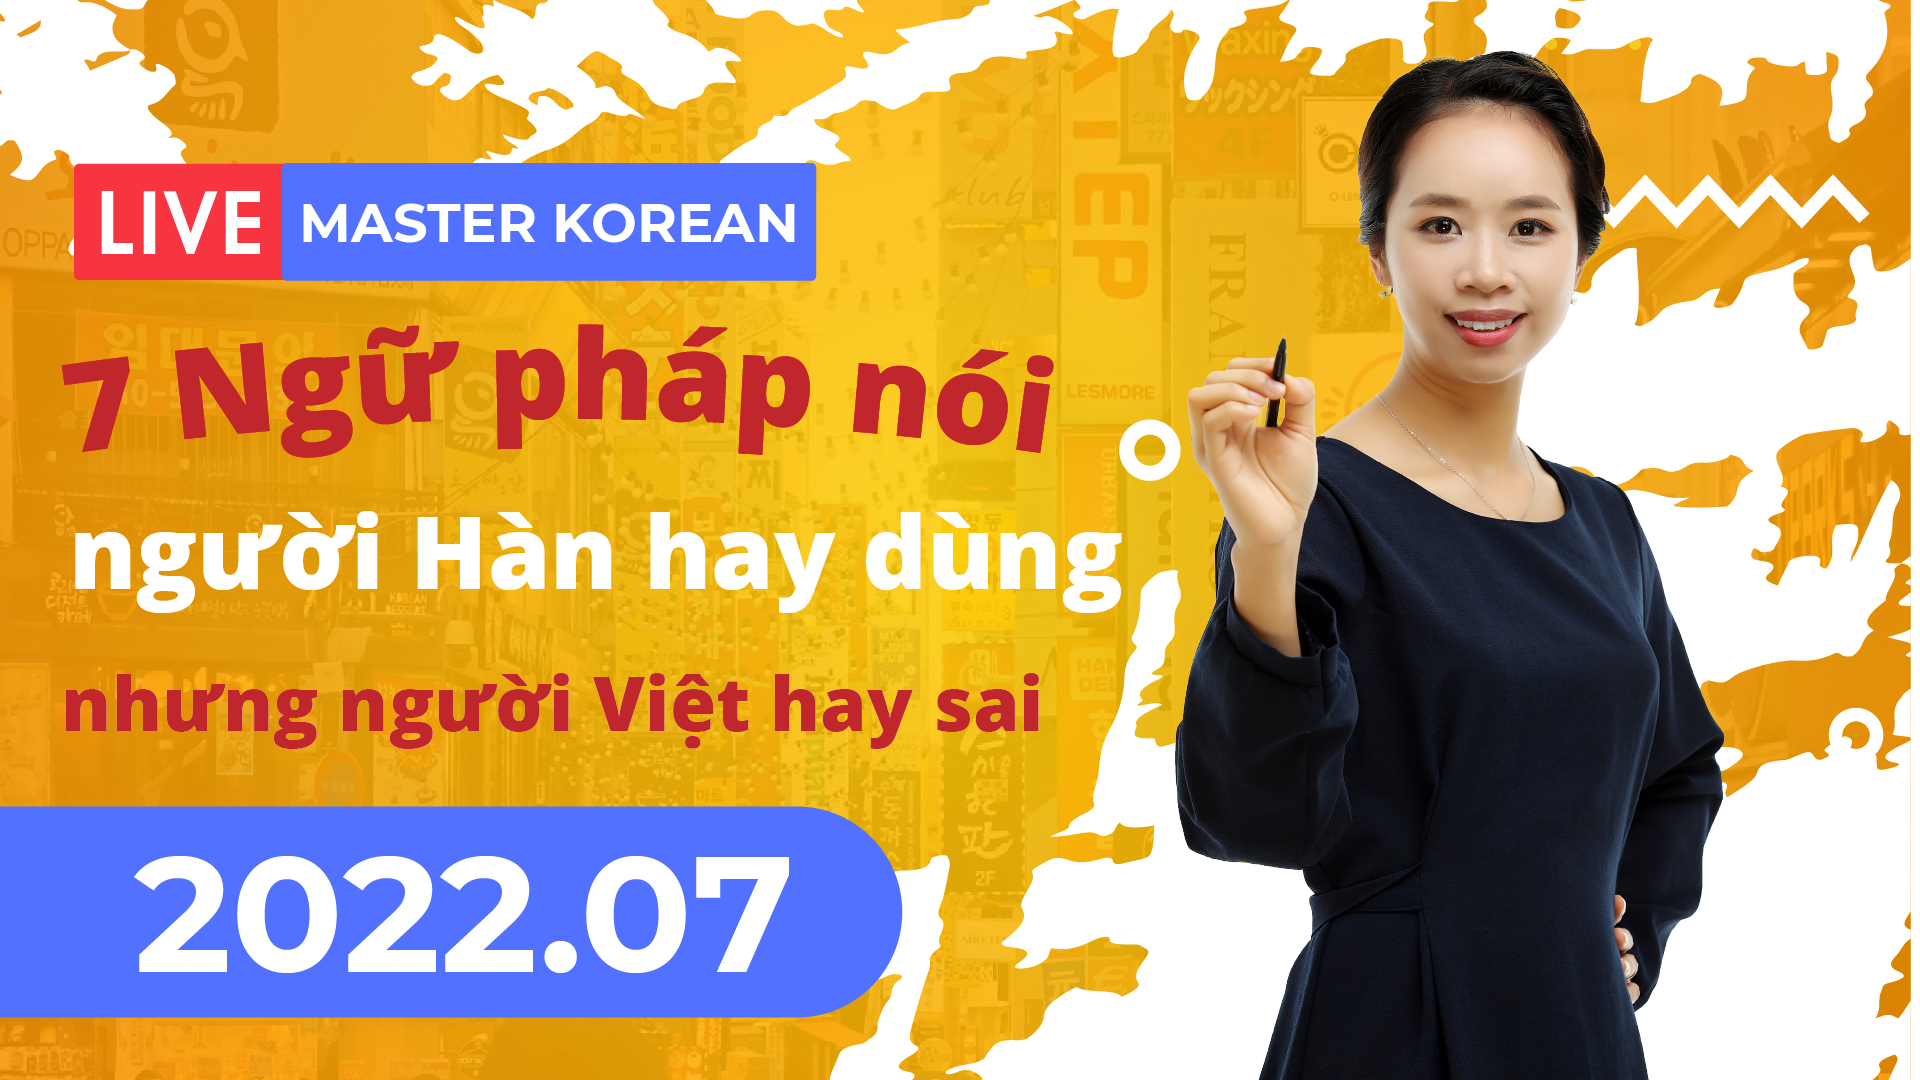 Facebook Livestream 2022.07 7 Ngữ pháp nói người Hàn hay dùng nhưng người Việt hay sai